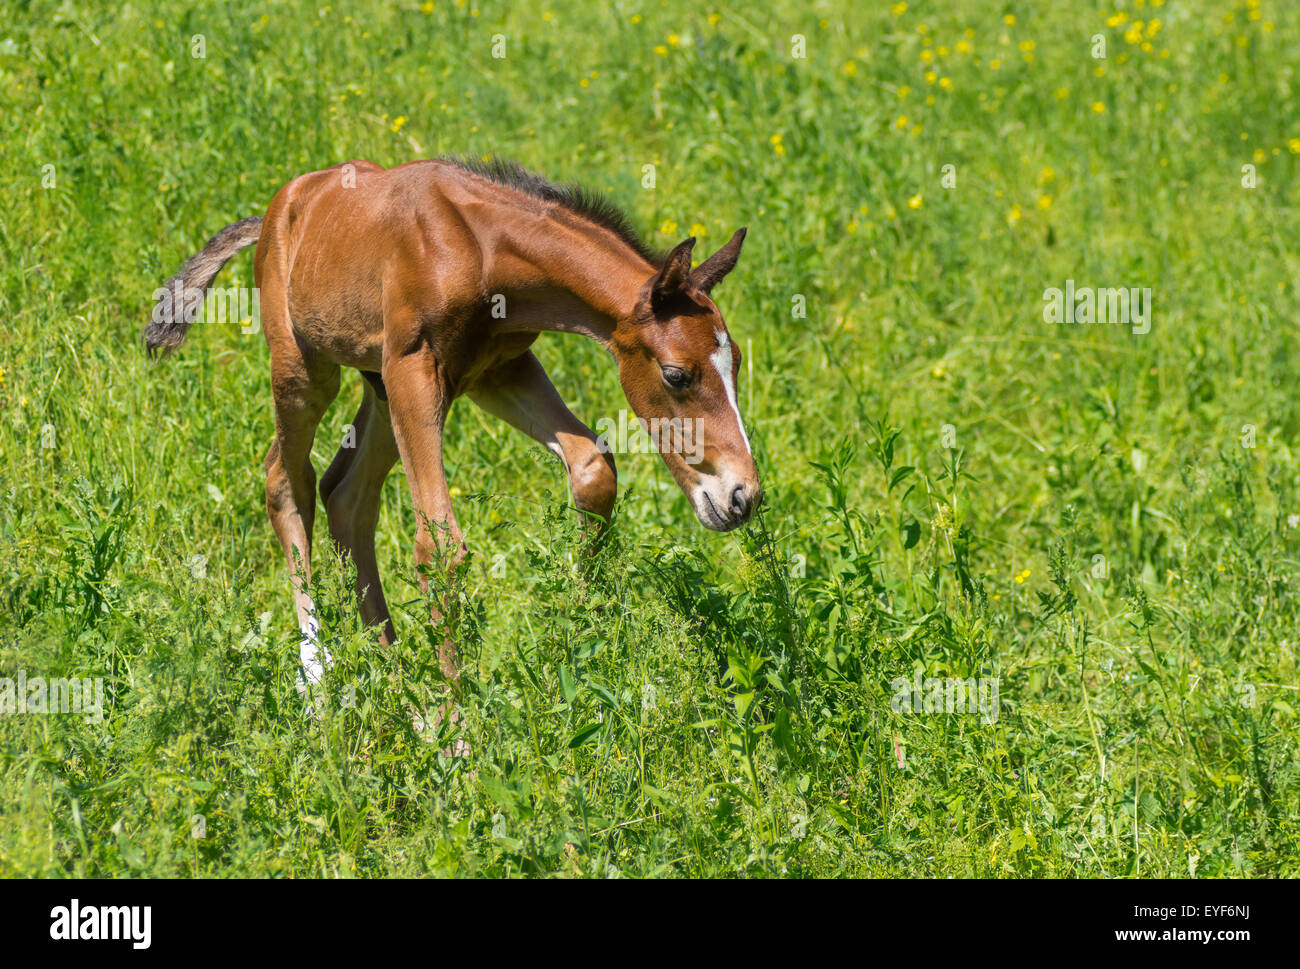 Primeros pasos del potro recién nacido en una pastura de verano Foto de stock